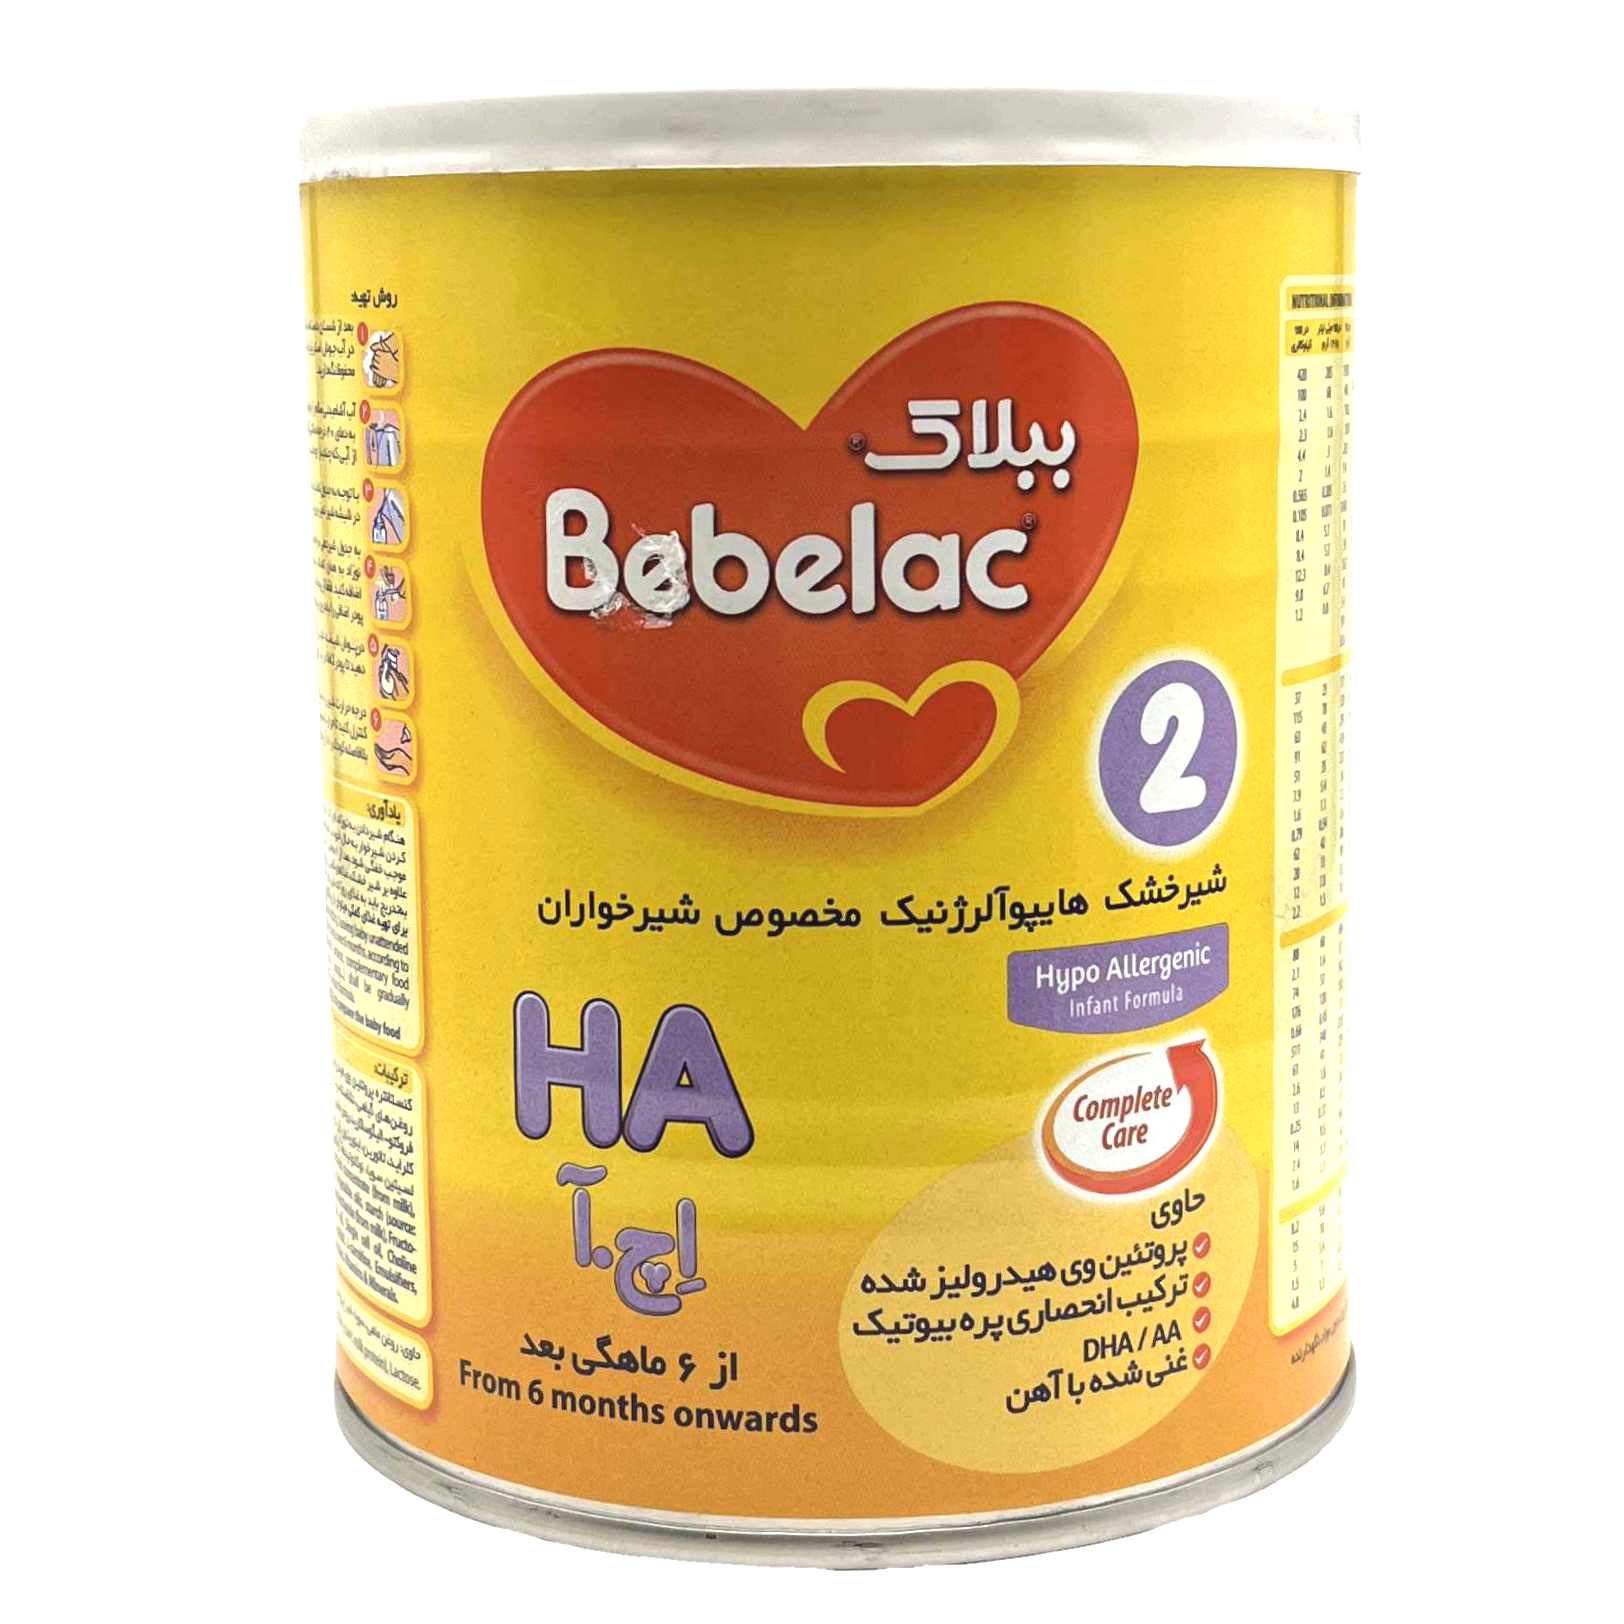  شیرخشک ببلاک اچ آ Bebelac HA 2